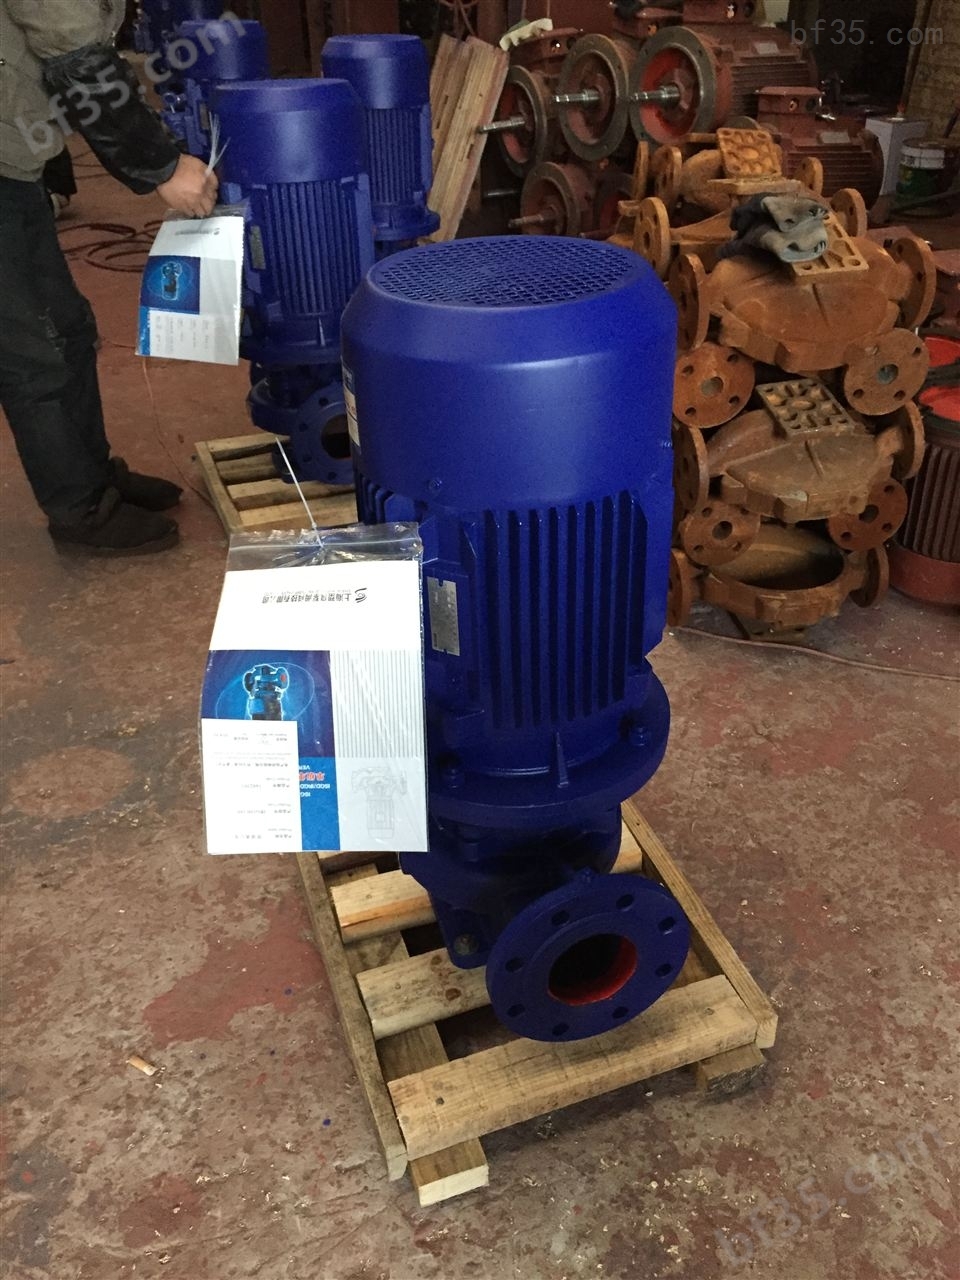 供应ISG40-250（I）C立式增压管道泵,单吸立式管道离心泵,单级管道泵厂